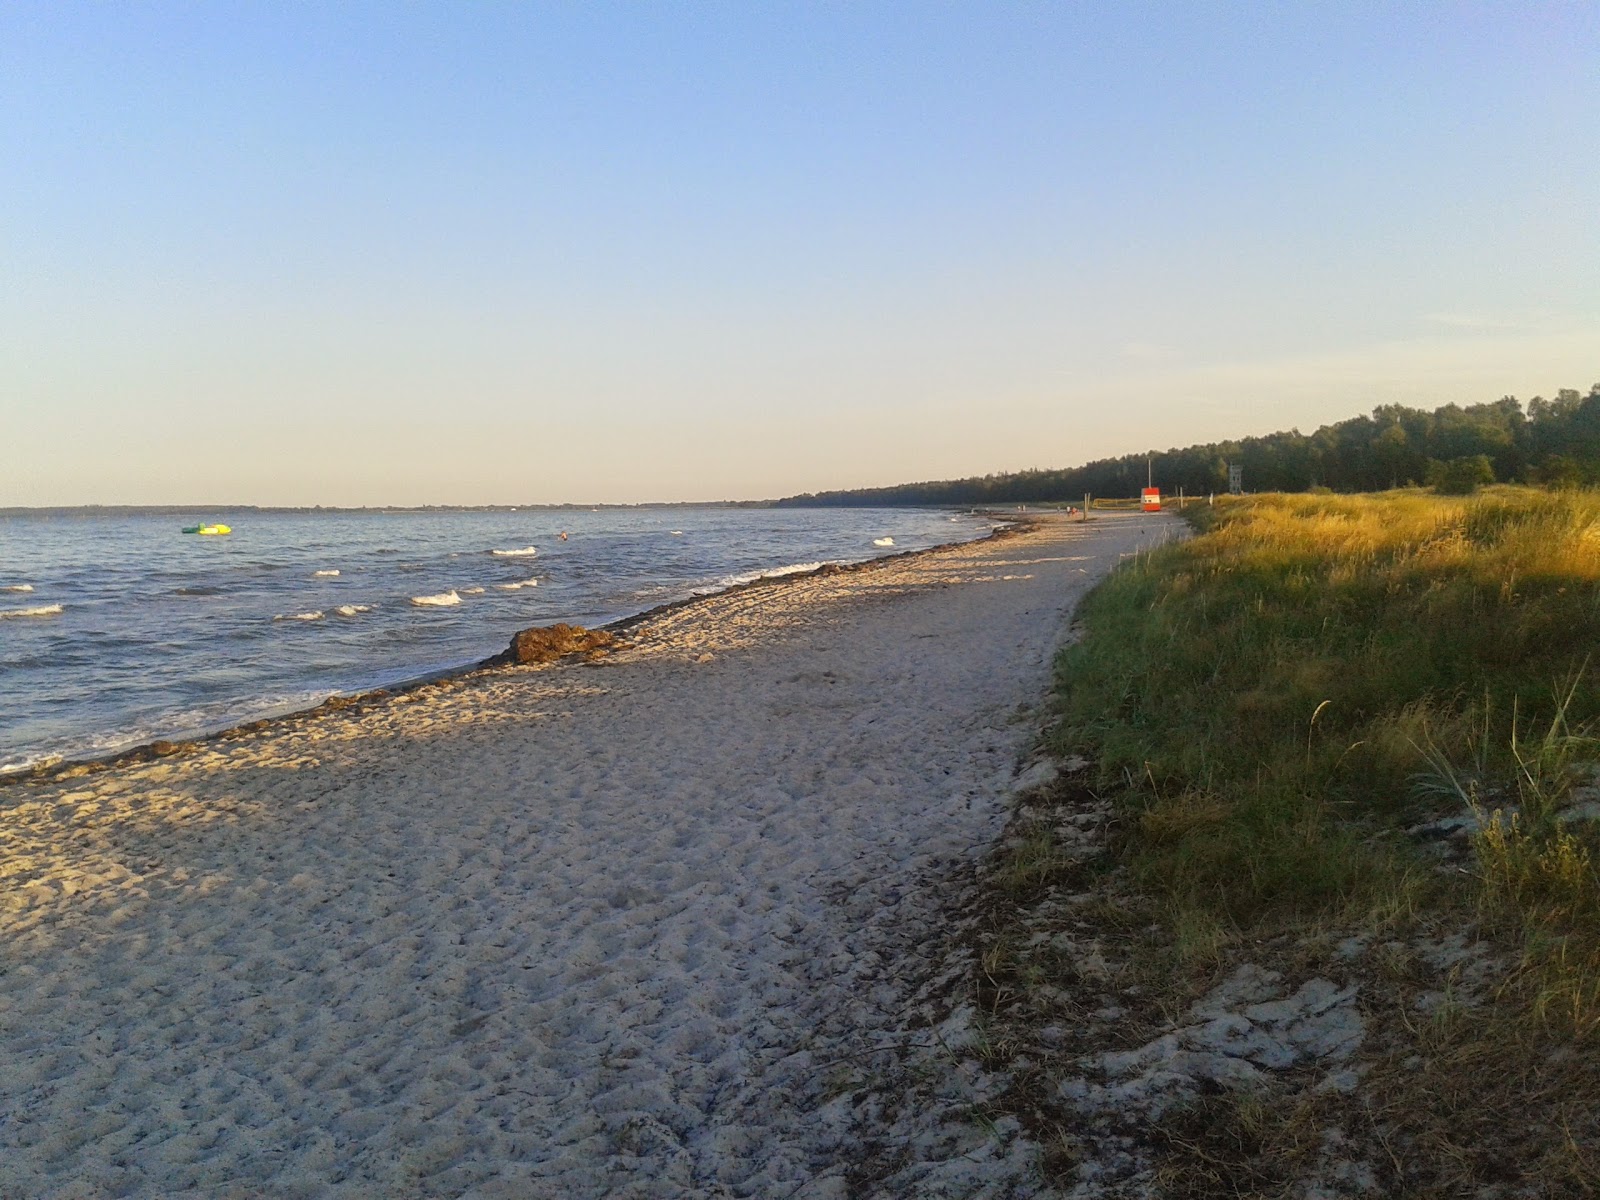 Zdjęcie Fed Beach z powierzchnią jasny piasek